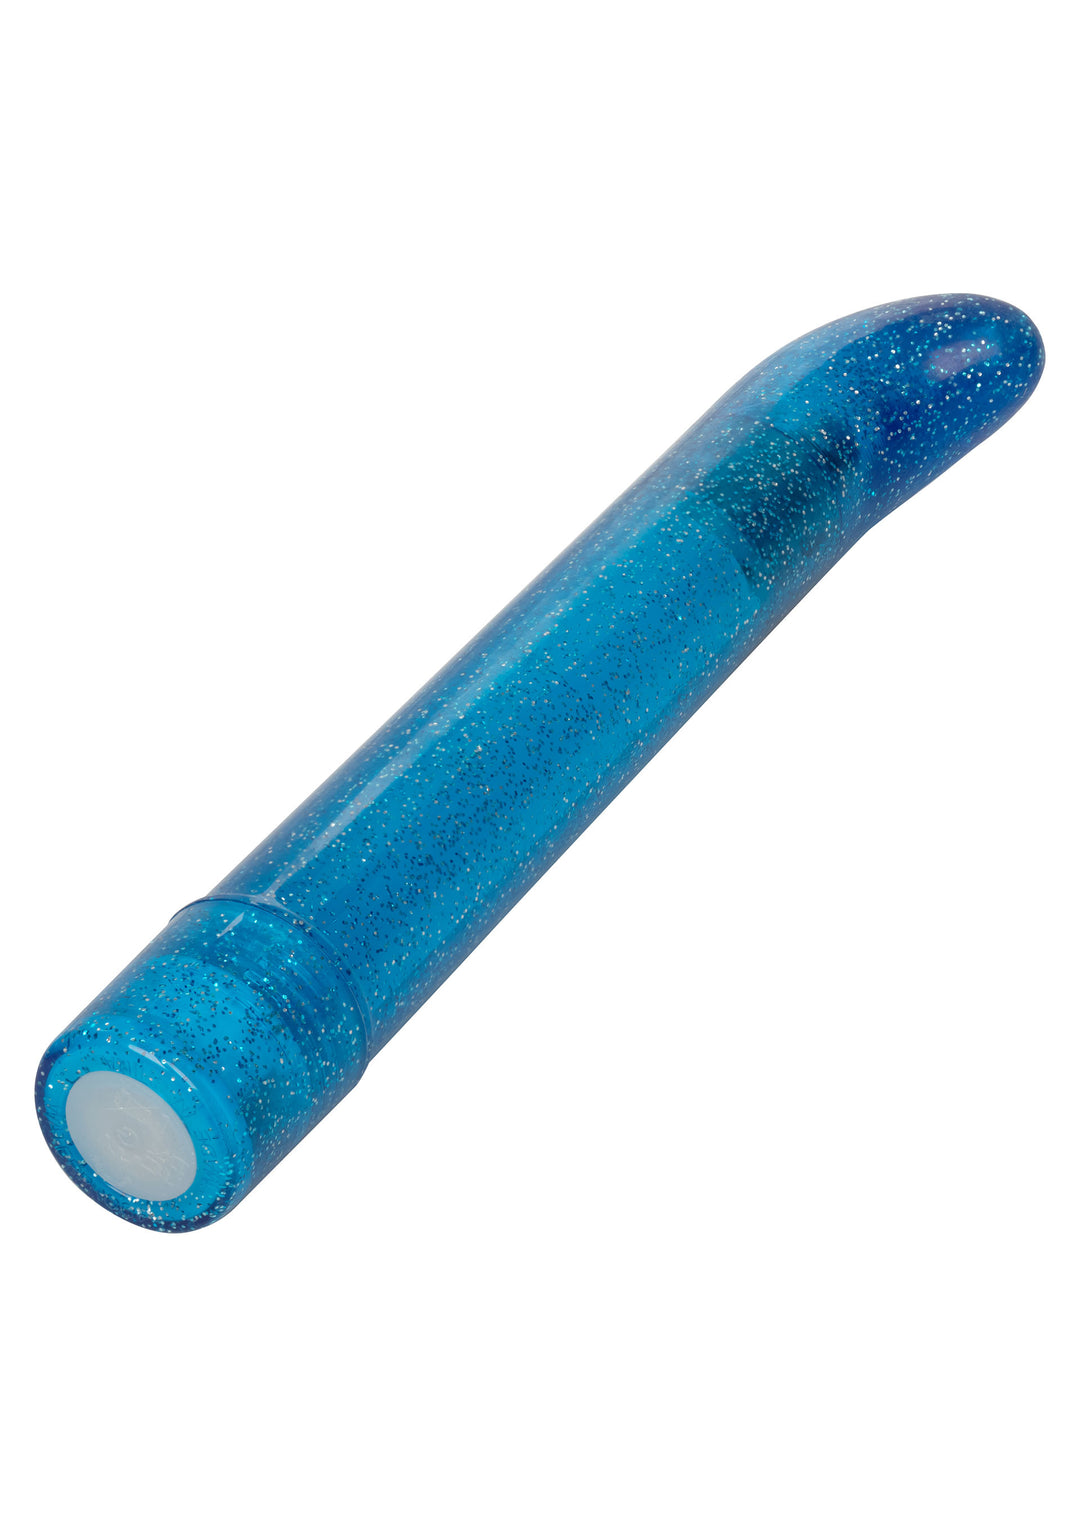 Blue Sparkle Slim G-vibe g-spot vibrator